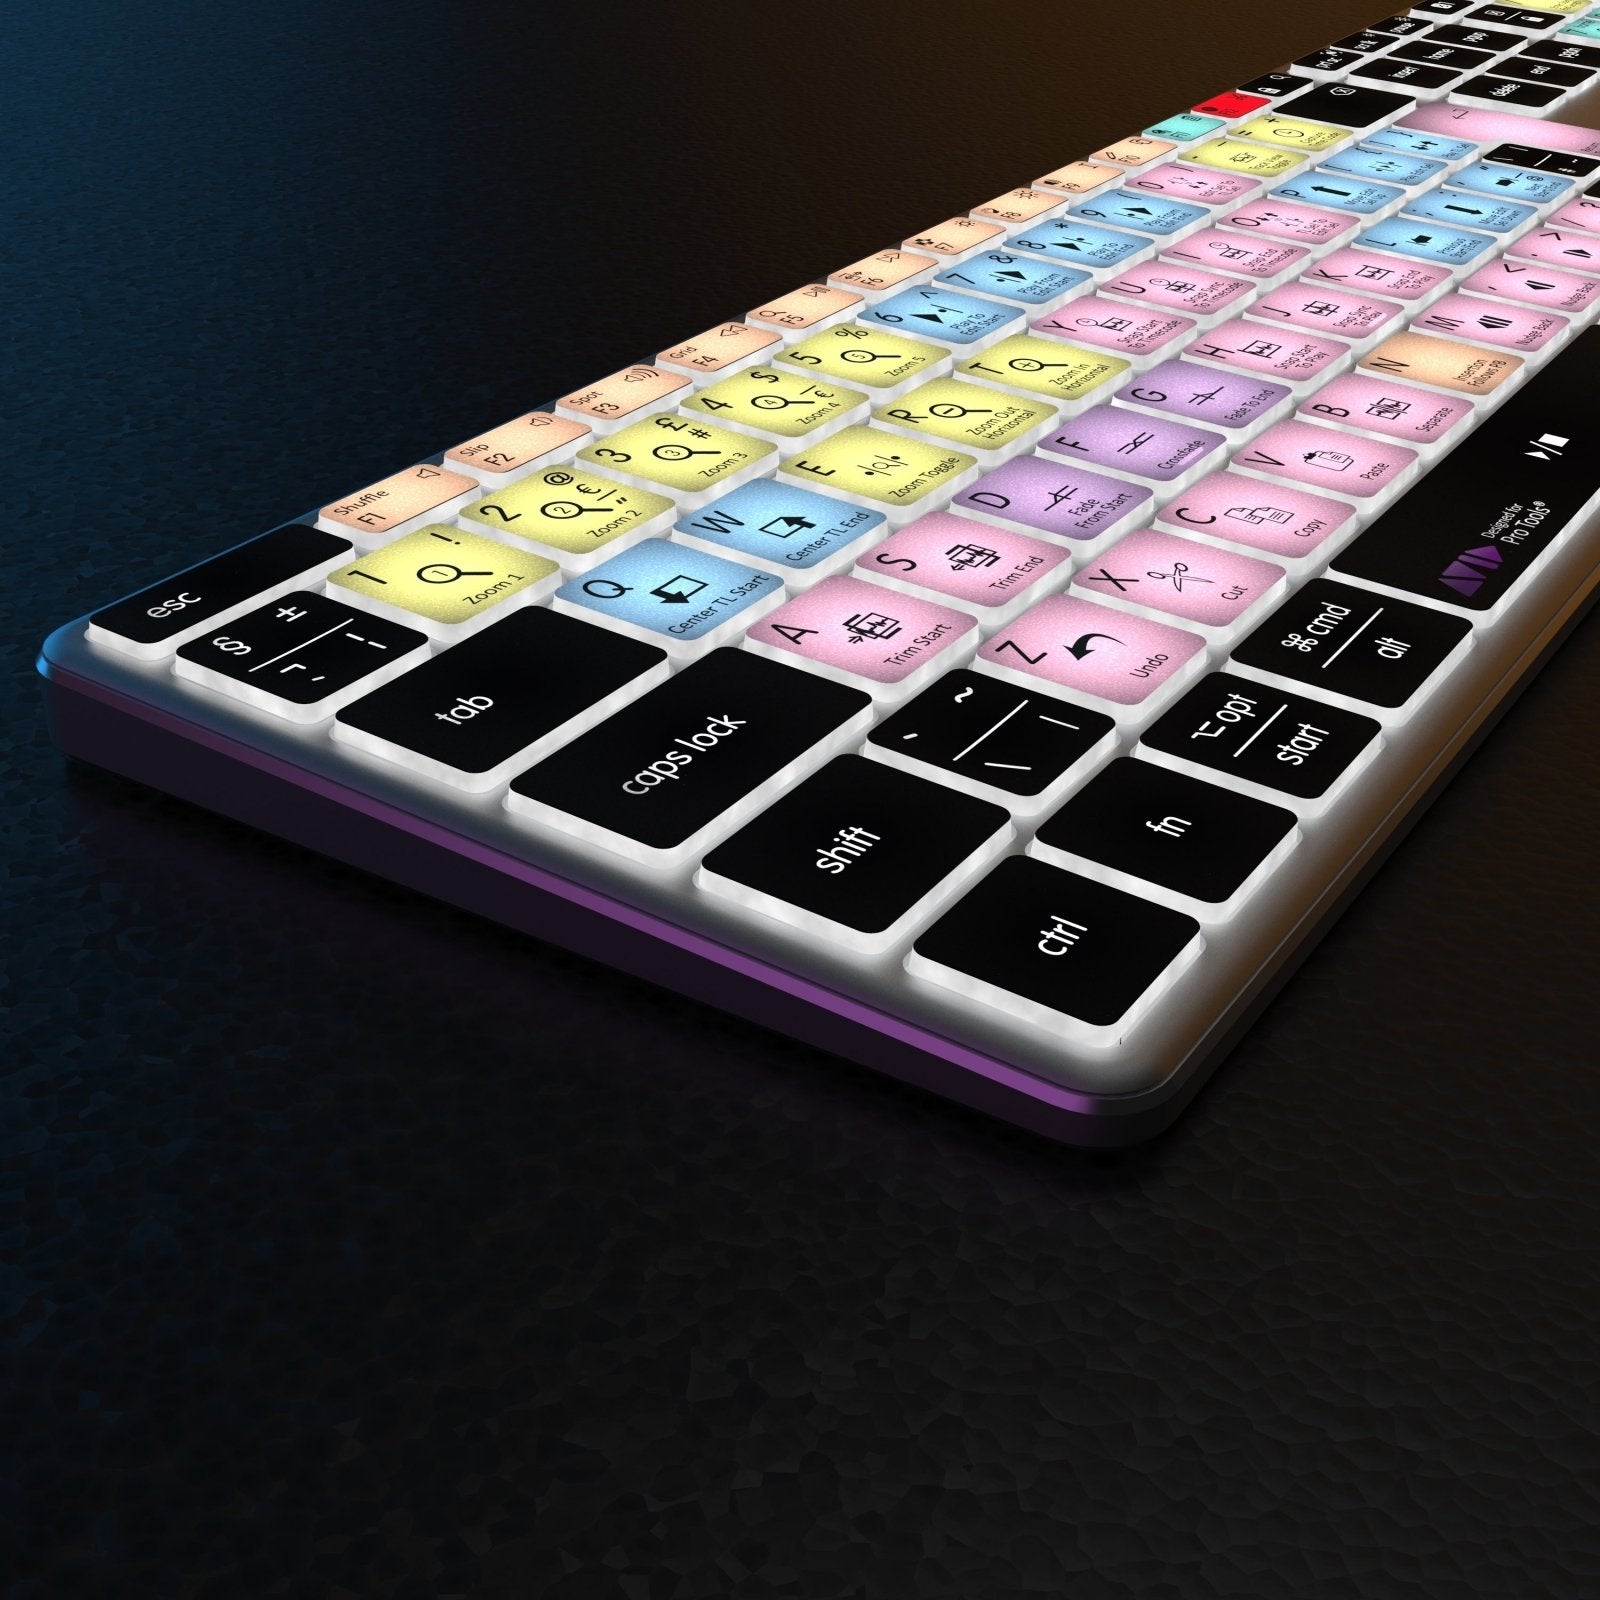 NEW Pro Tools Keyboard | Backlit & Wireless | Mac & PC - Editors Keys